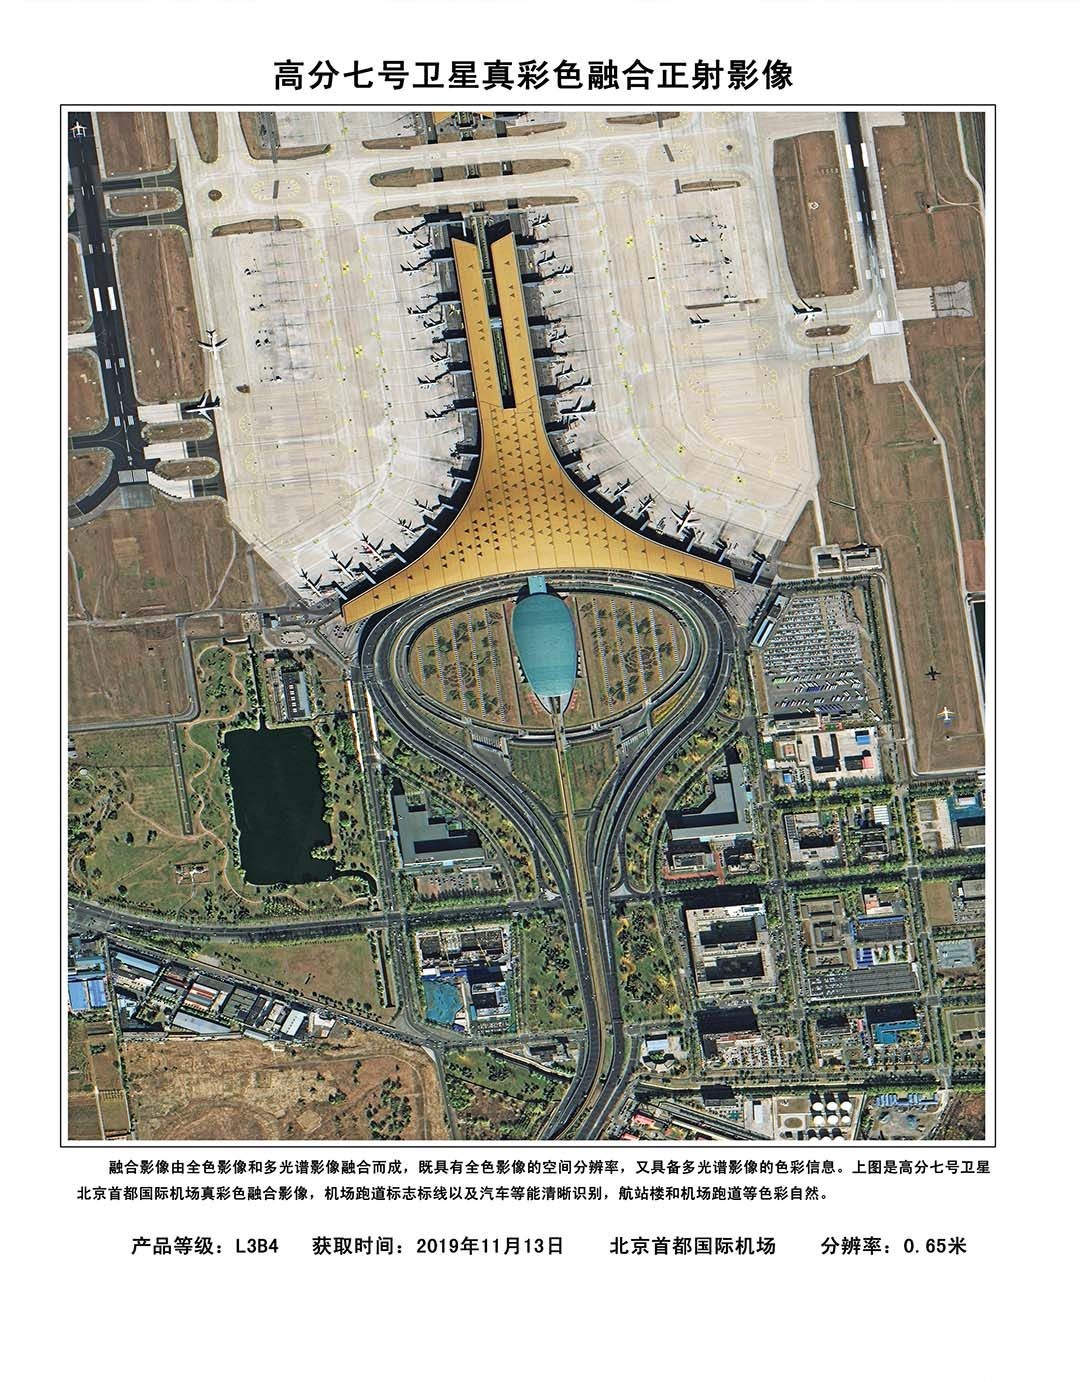 首都機場跑道標誌清晰可見